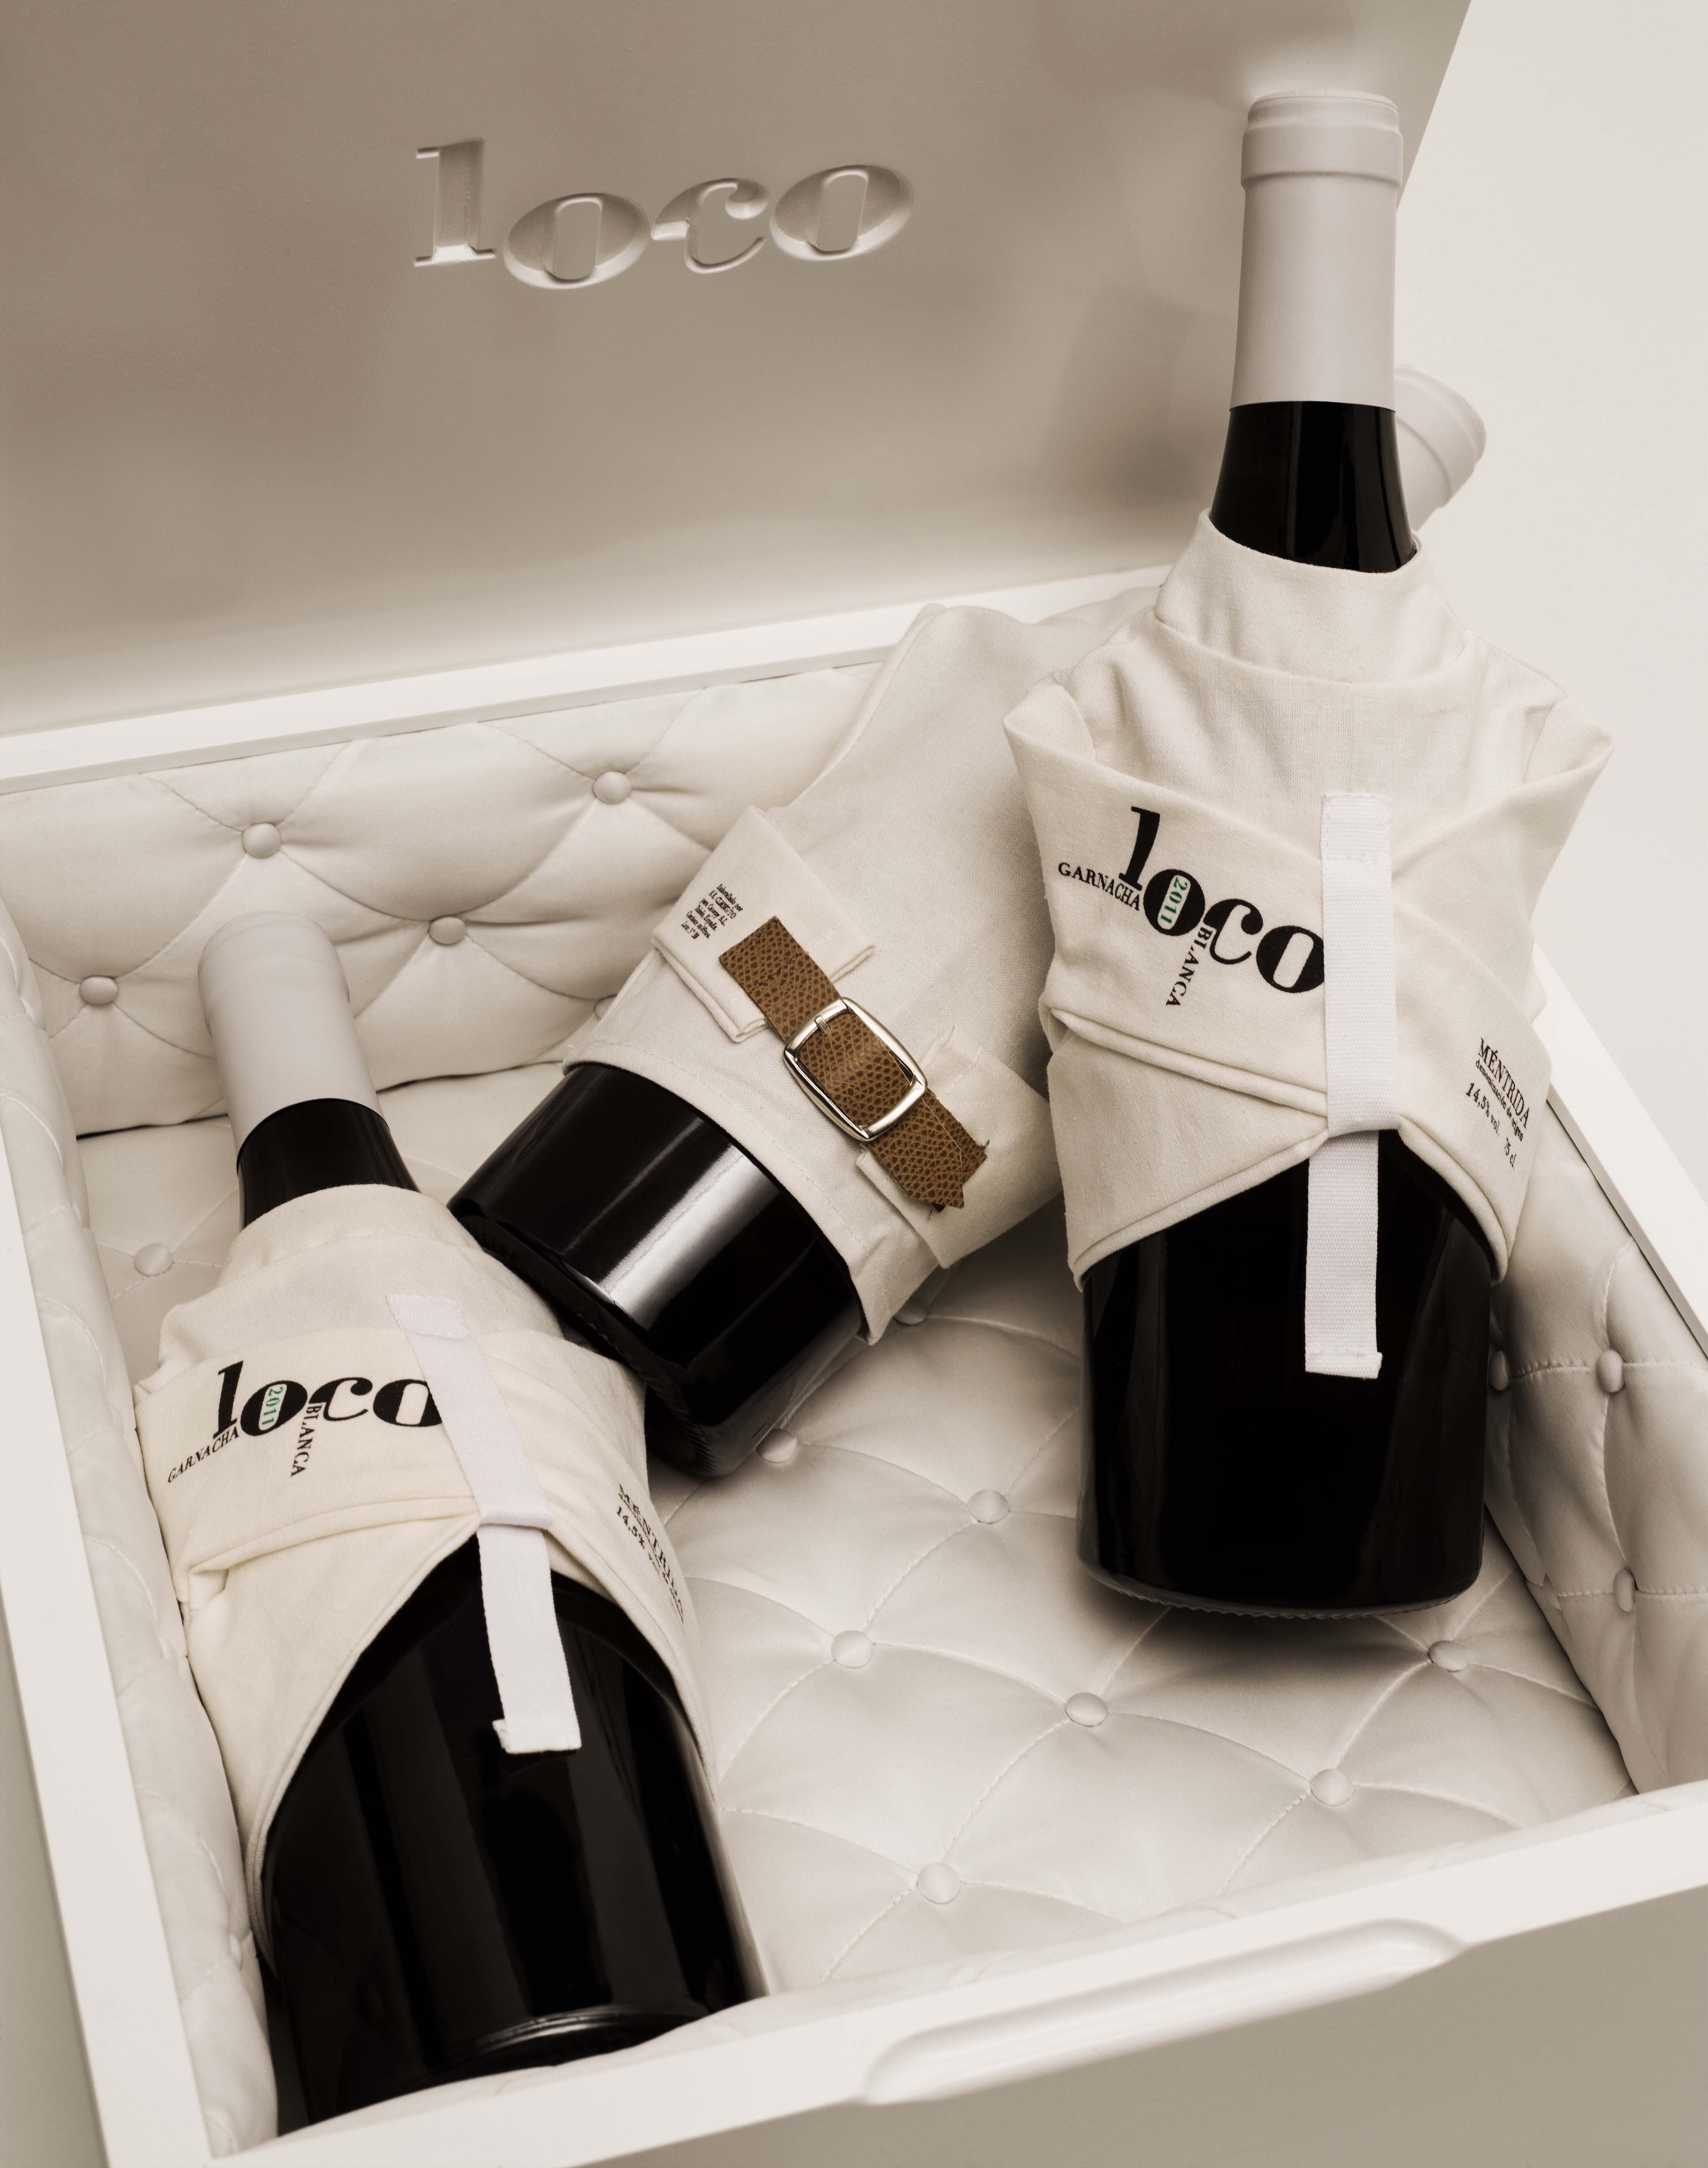 Packaging Vino Loco